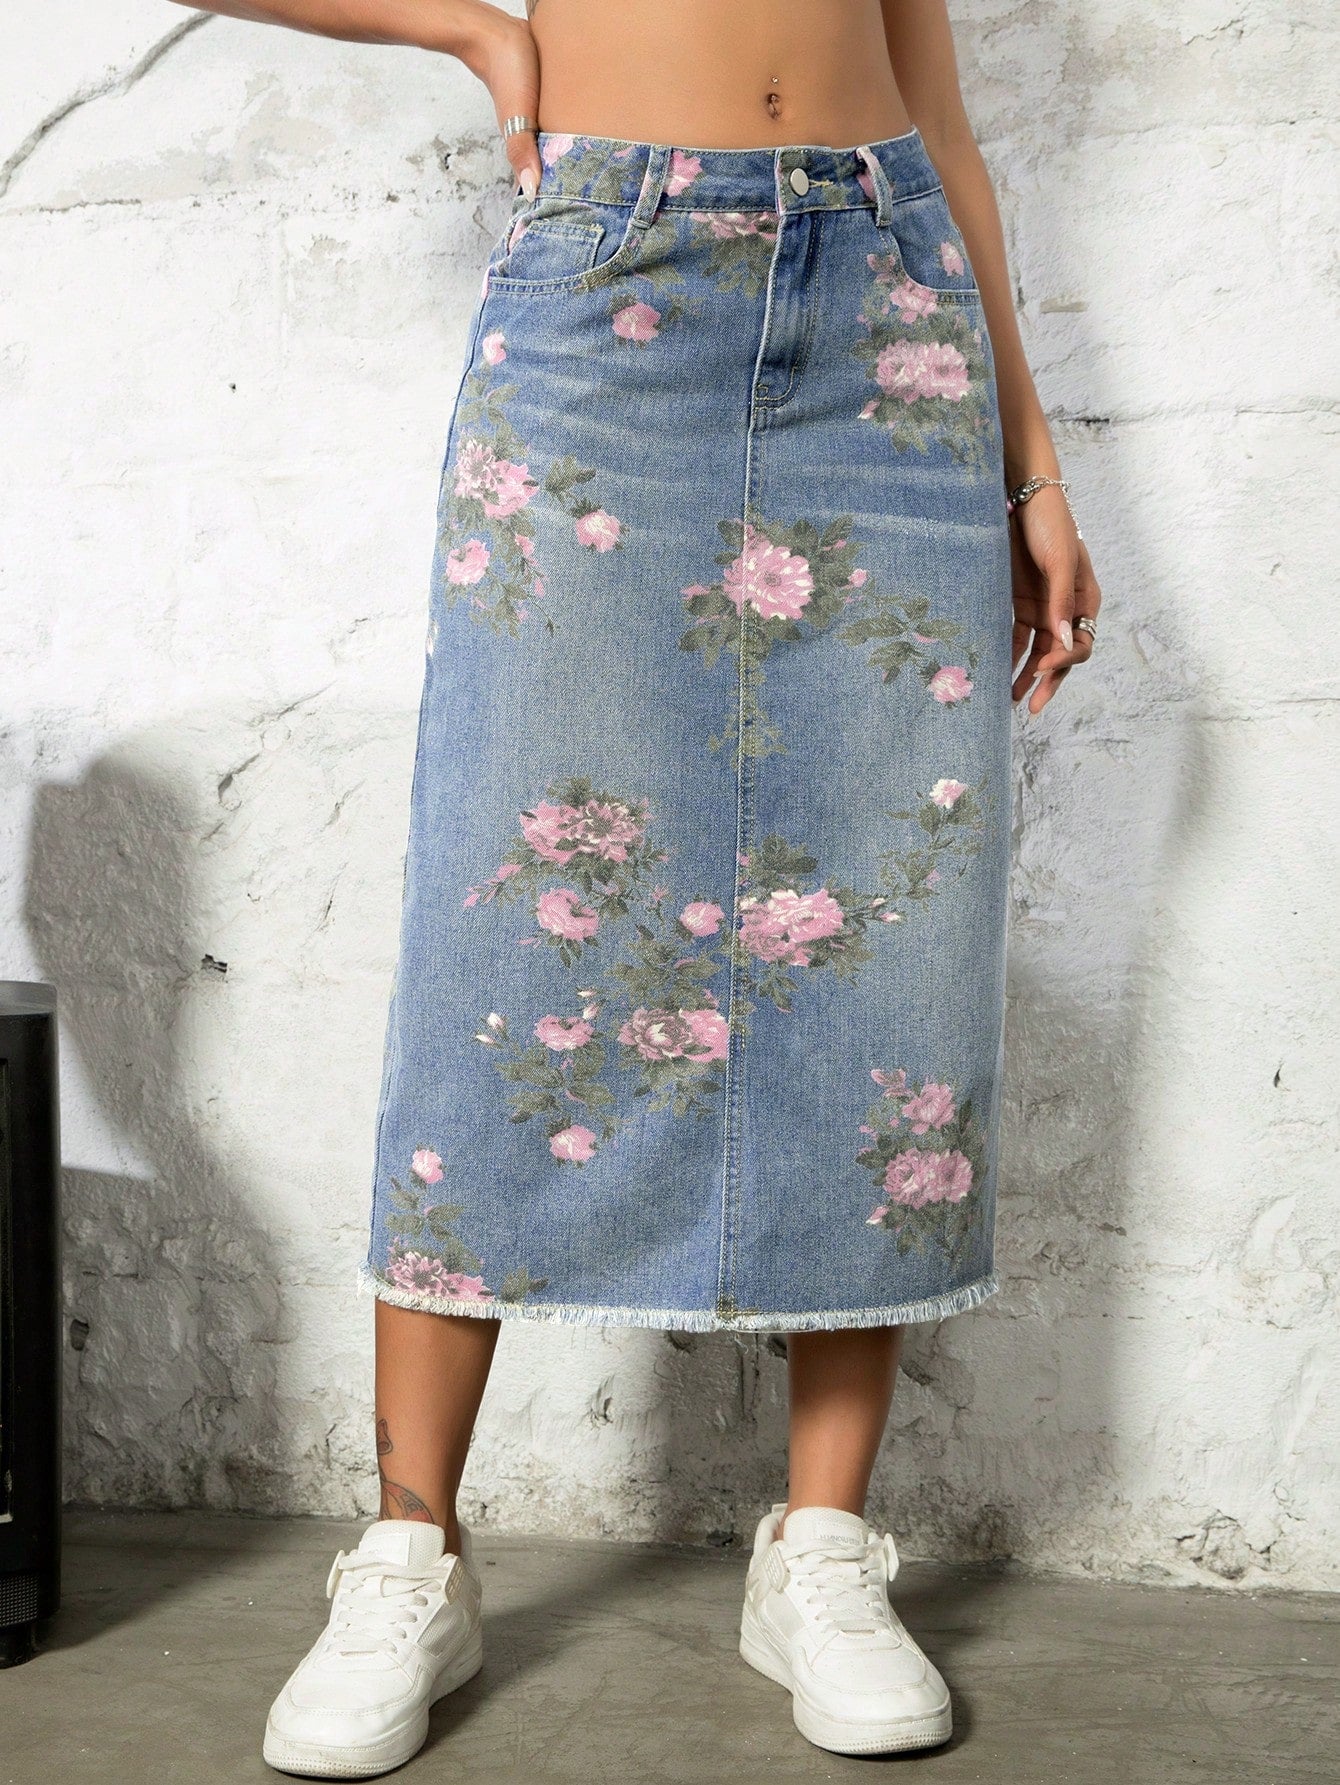 Street Vintage Charm: Floral Print Distressed Denim Skirt Split Back Design